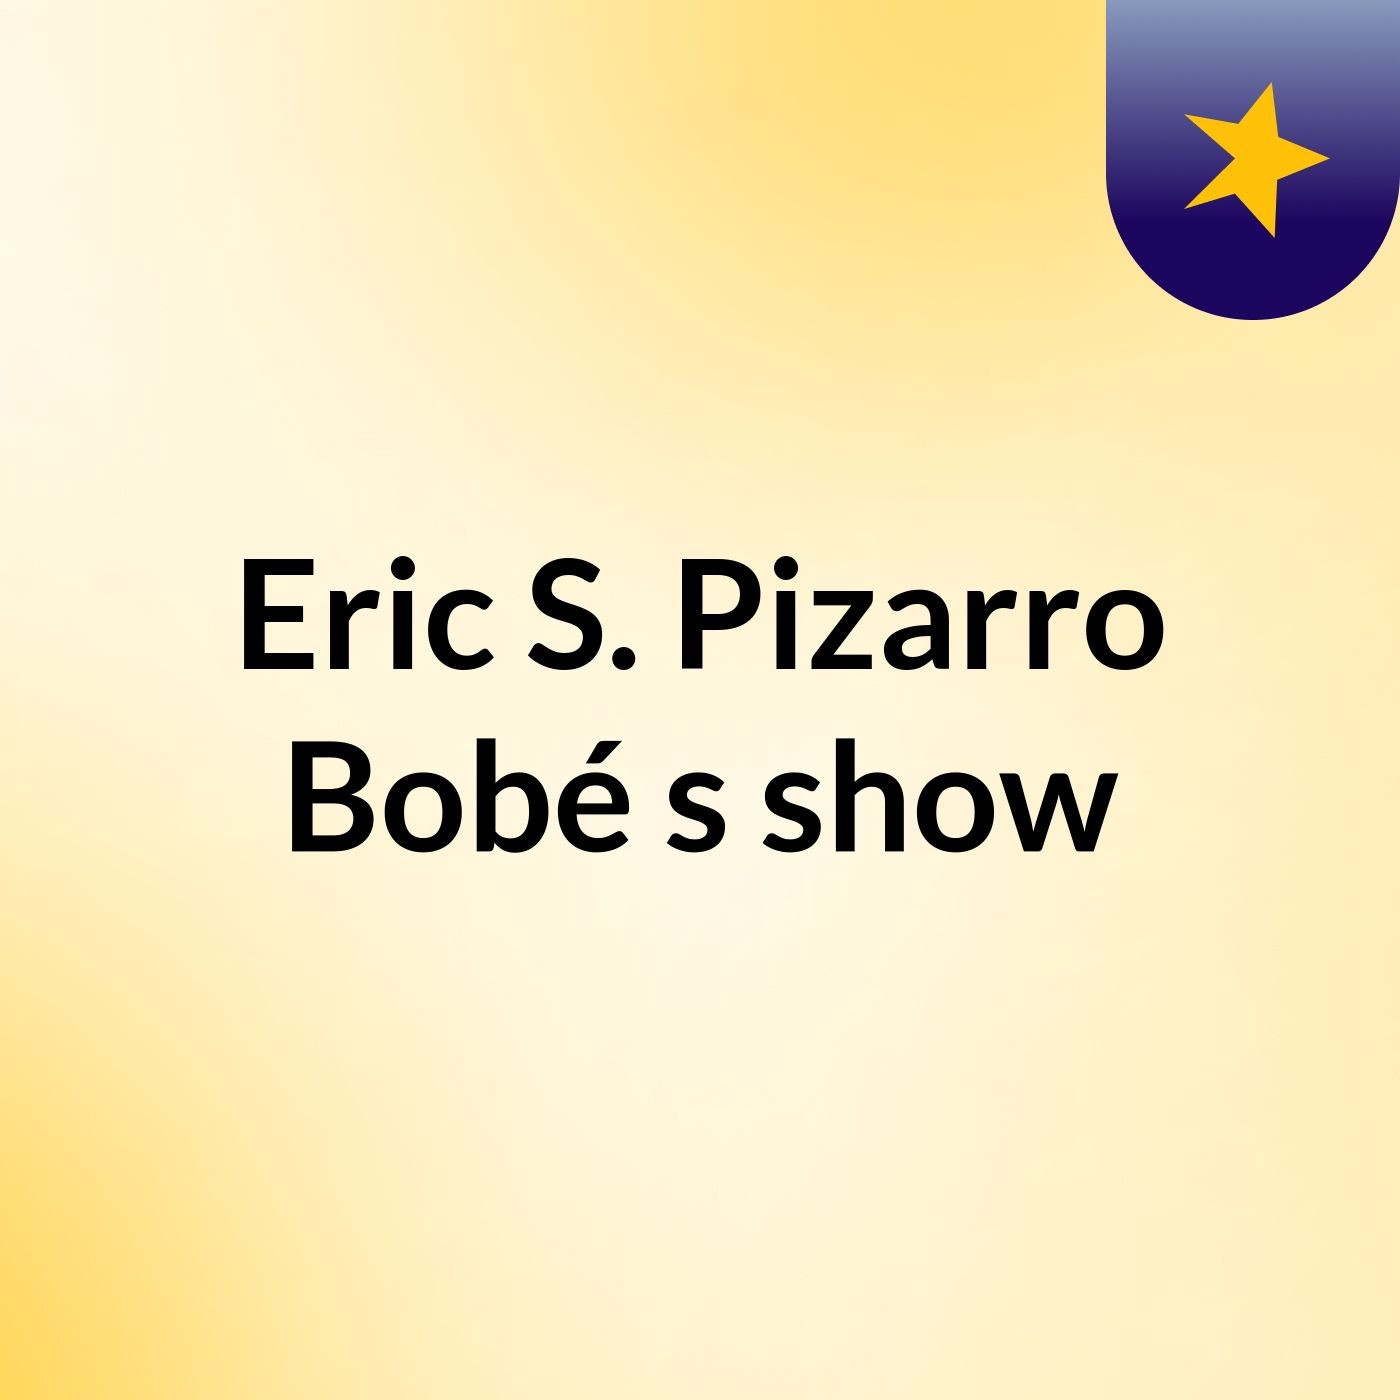 Eric S. Pizarro Bobé's show